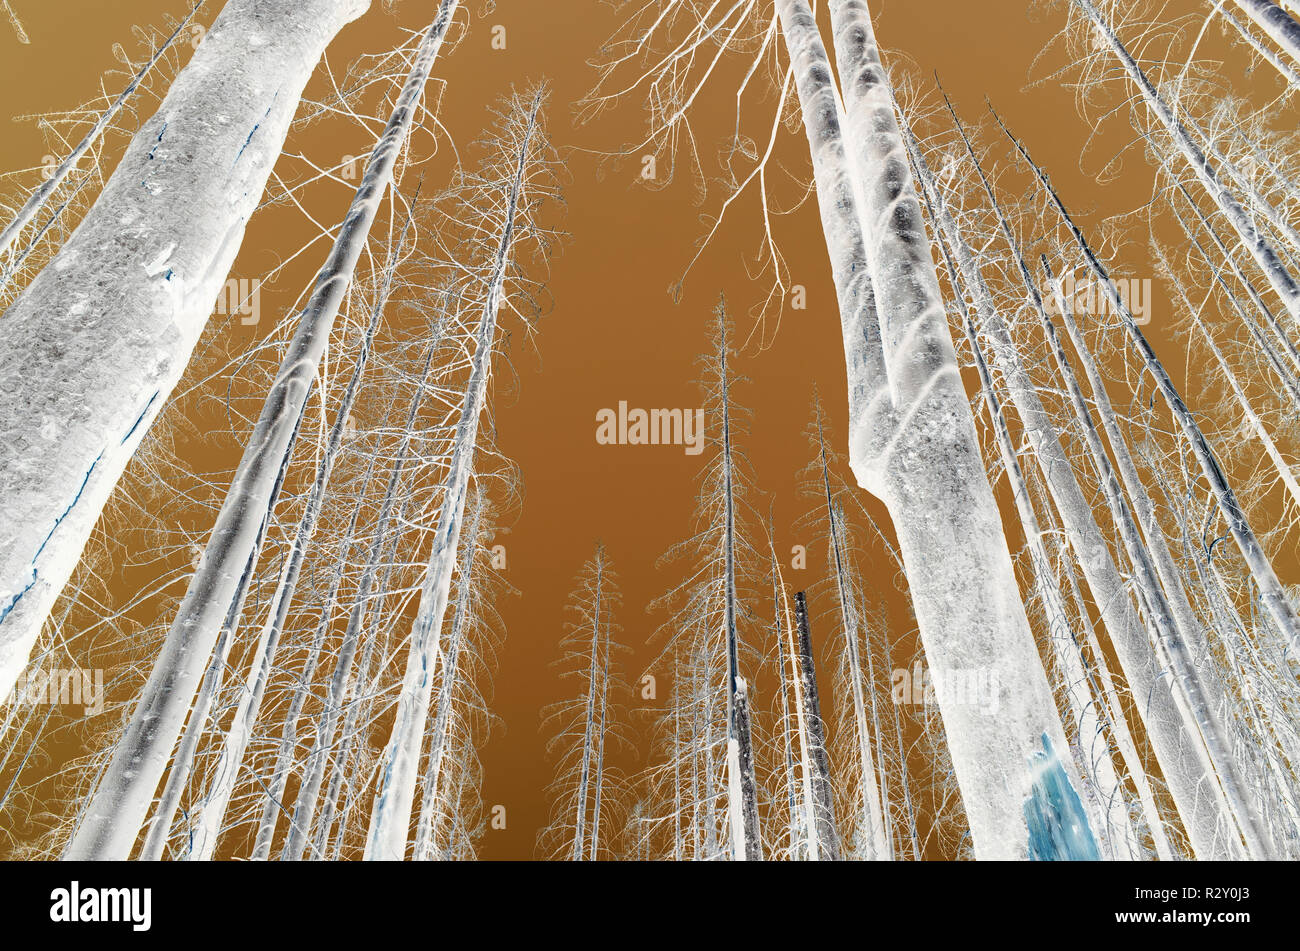 Le noir et blanc image inversée de la crête des Scandinaves feu de forêt arbres endommagés, low angle view, près de Mount Rainier National Park sur la Pacific Crest Trai Banque D'Images